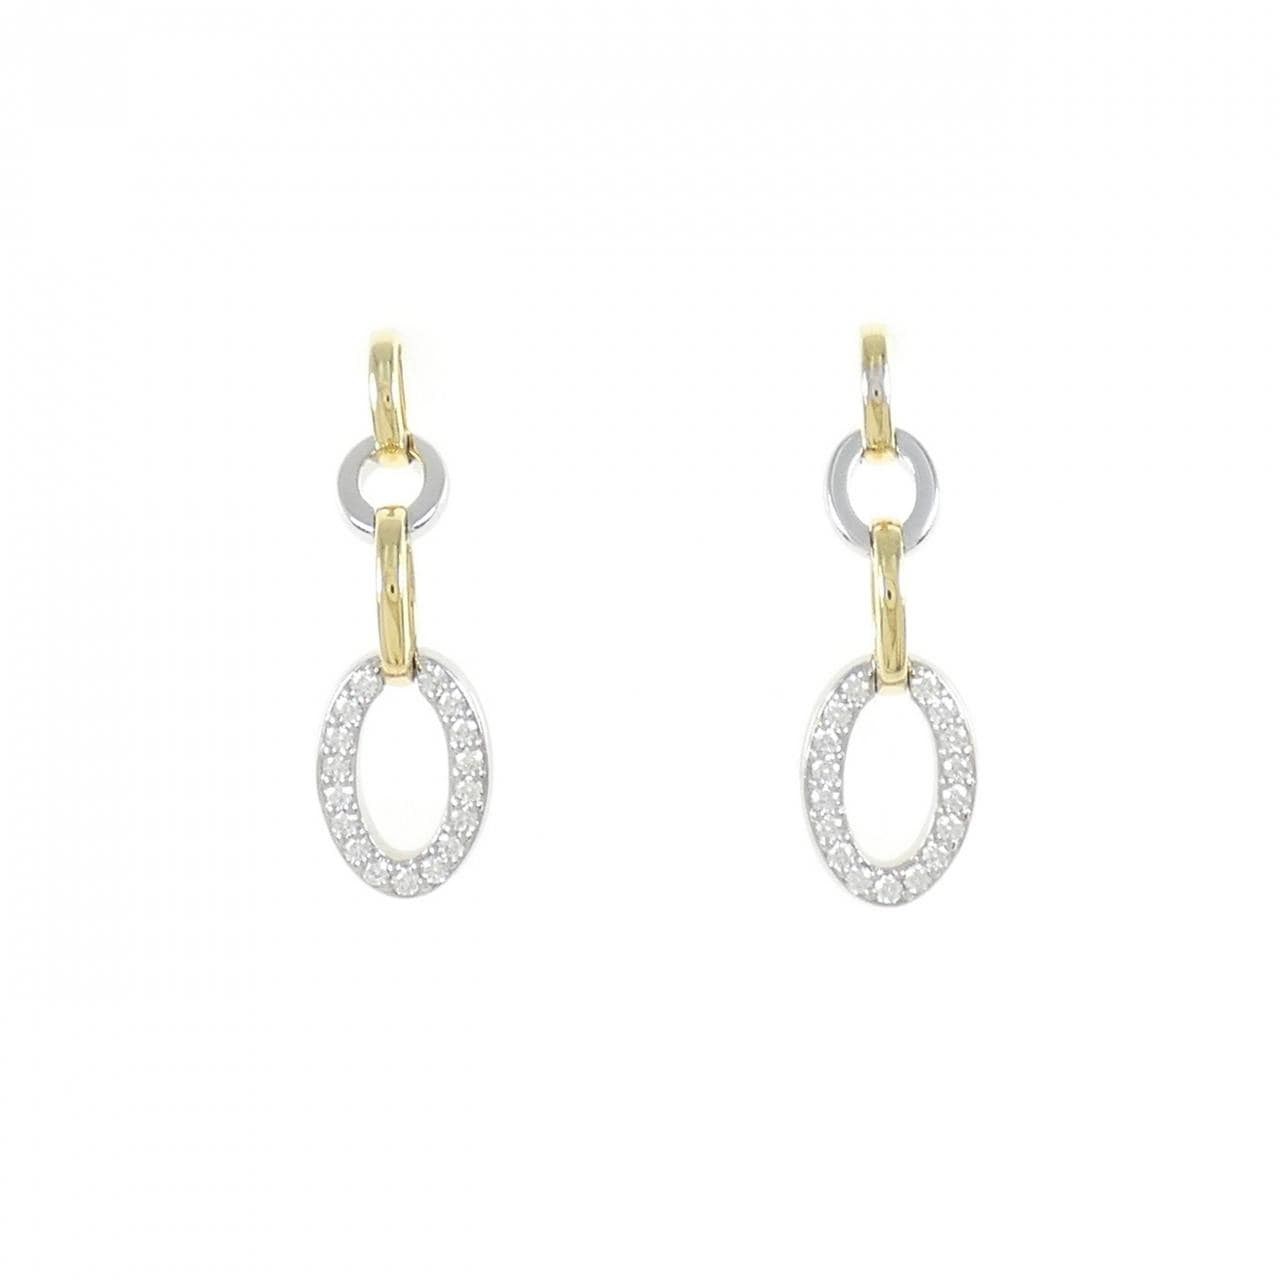 K18YG/K18WG Diamond Earrings 0.24CT